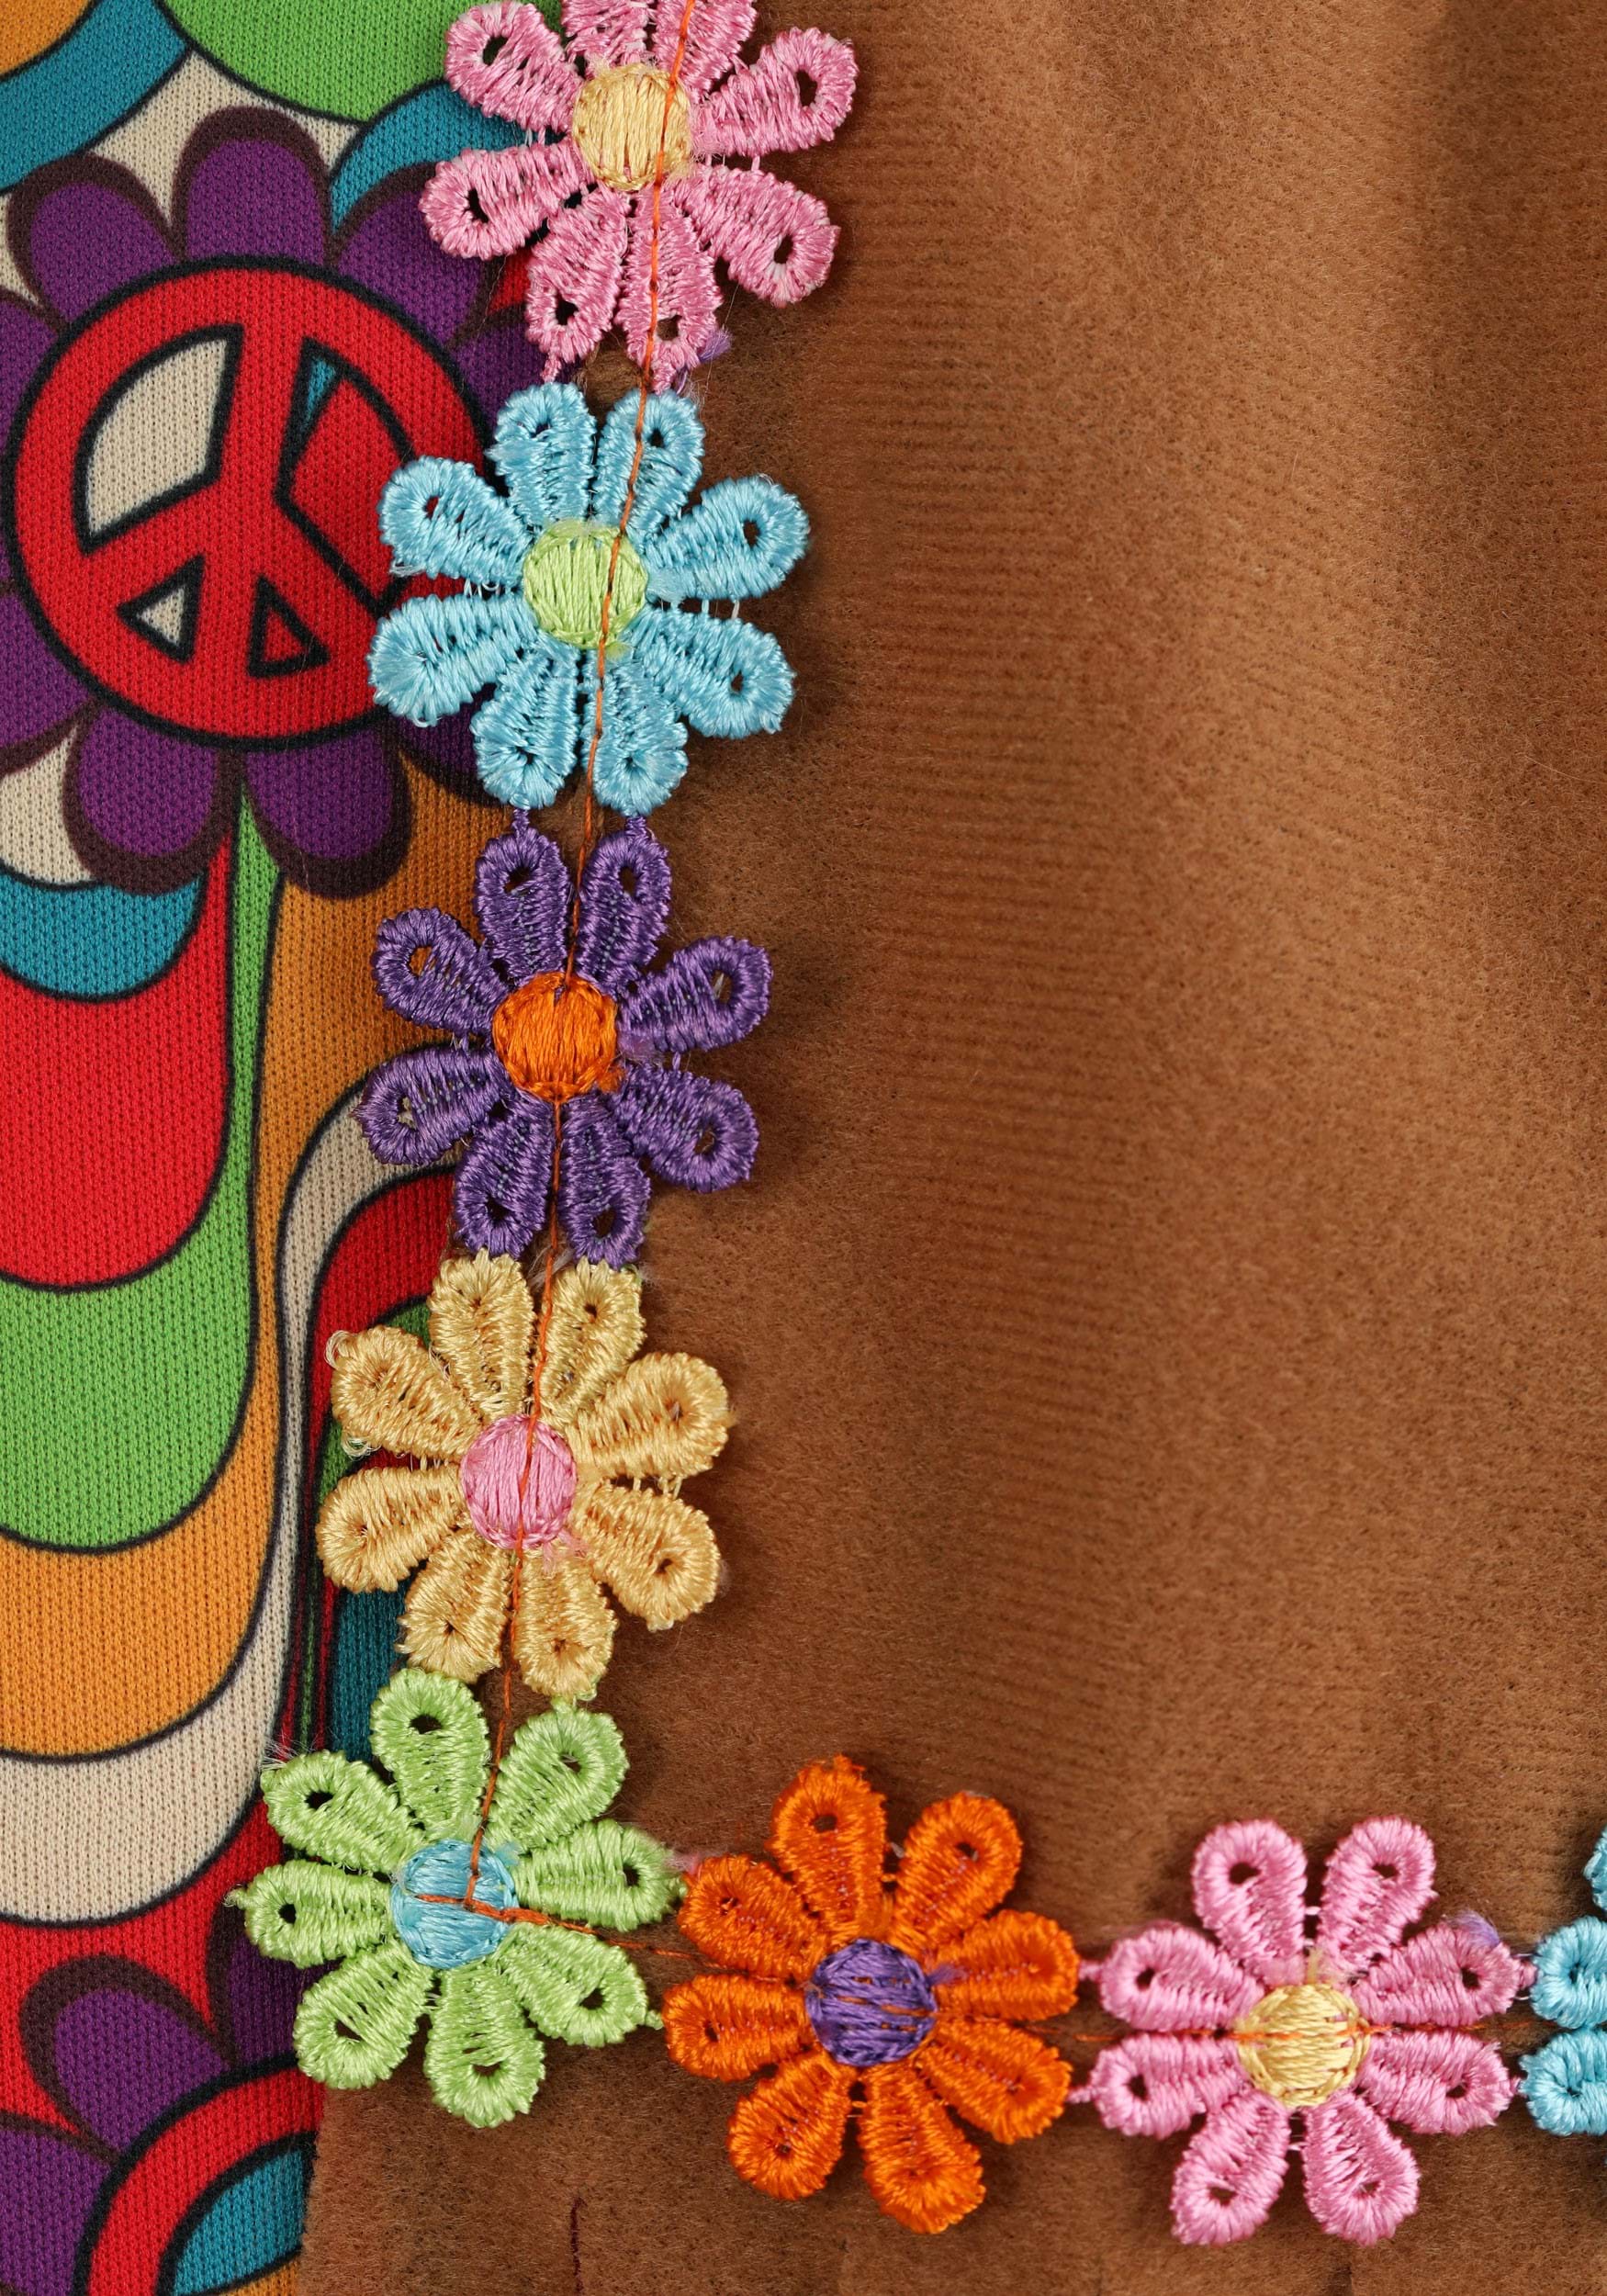 Woodstock Flower Hippie Costume For Girls